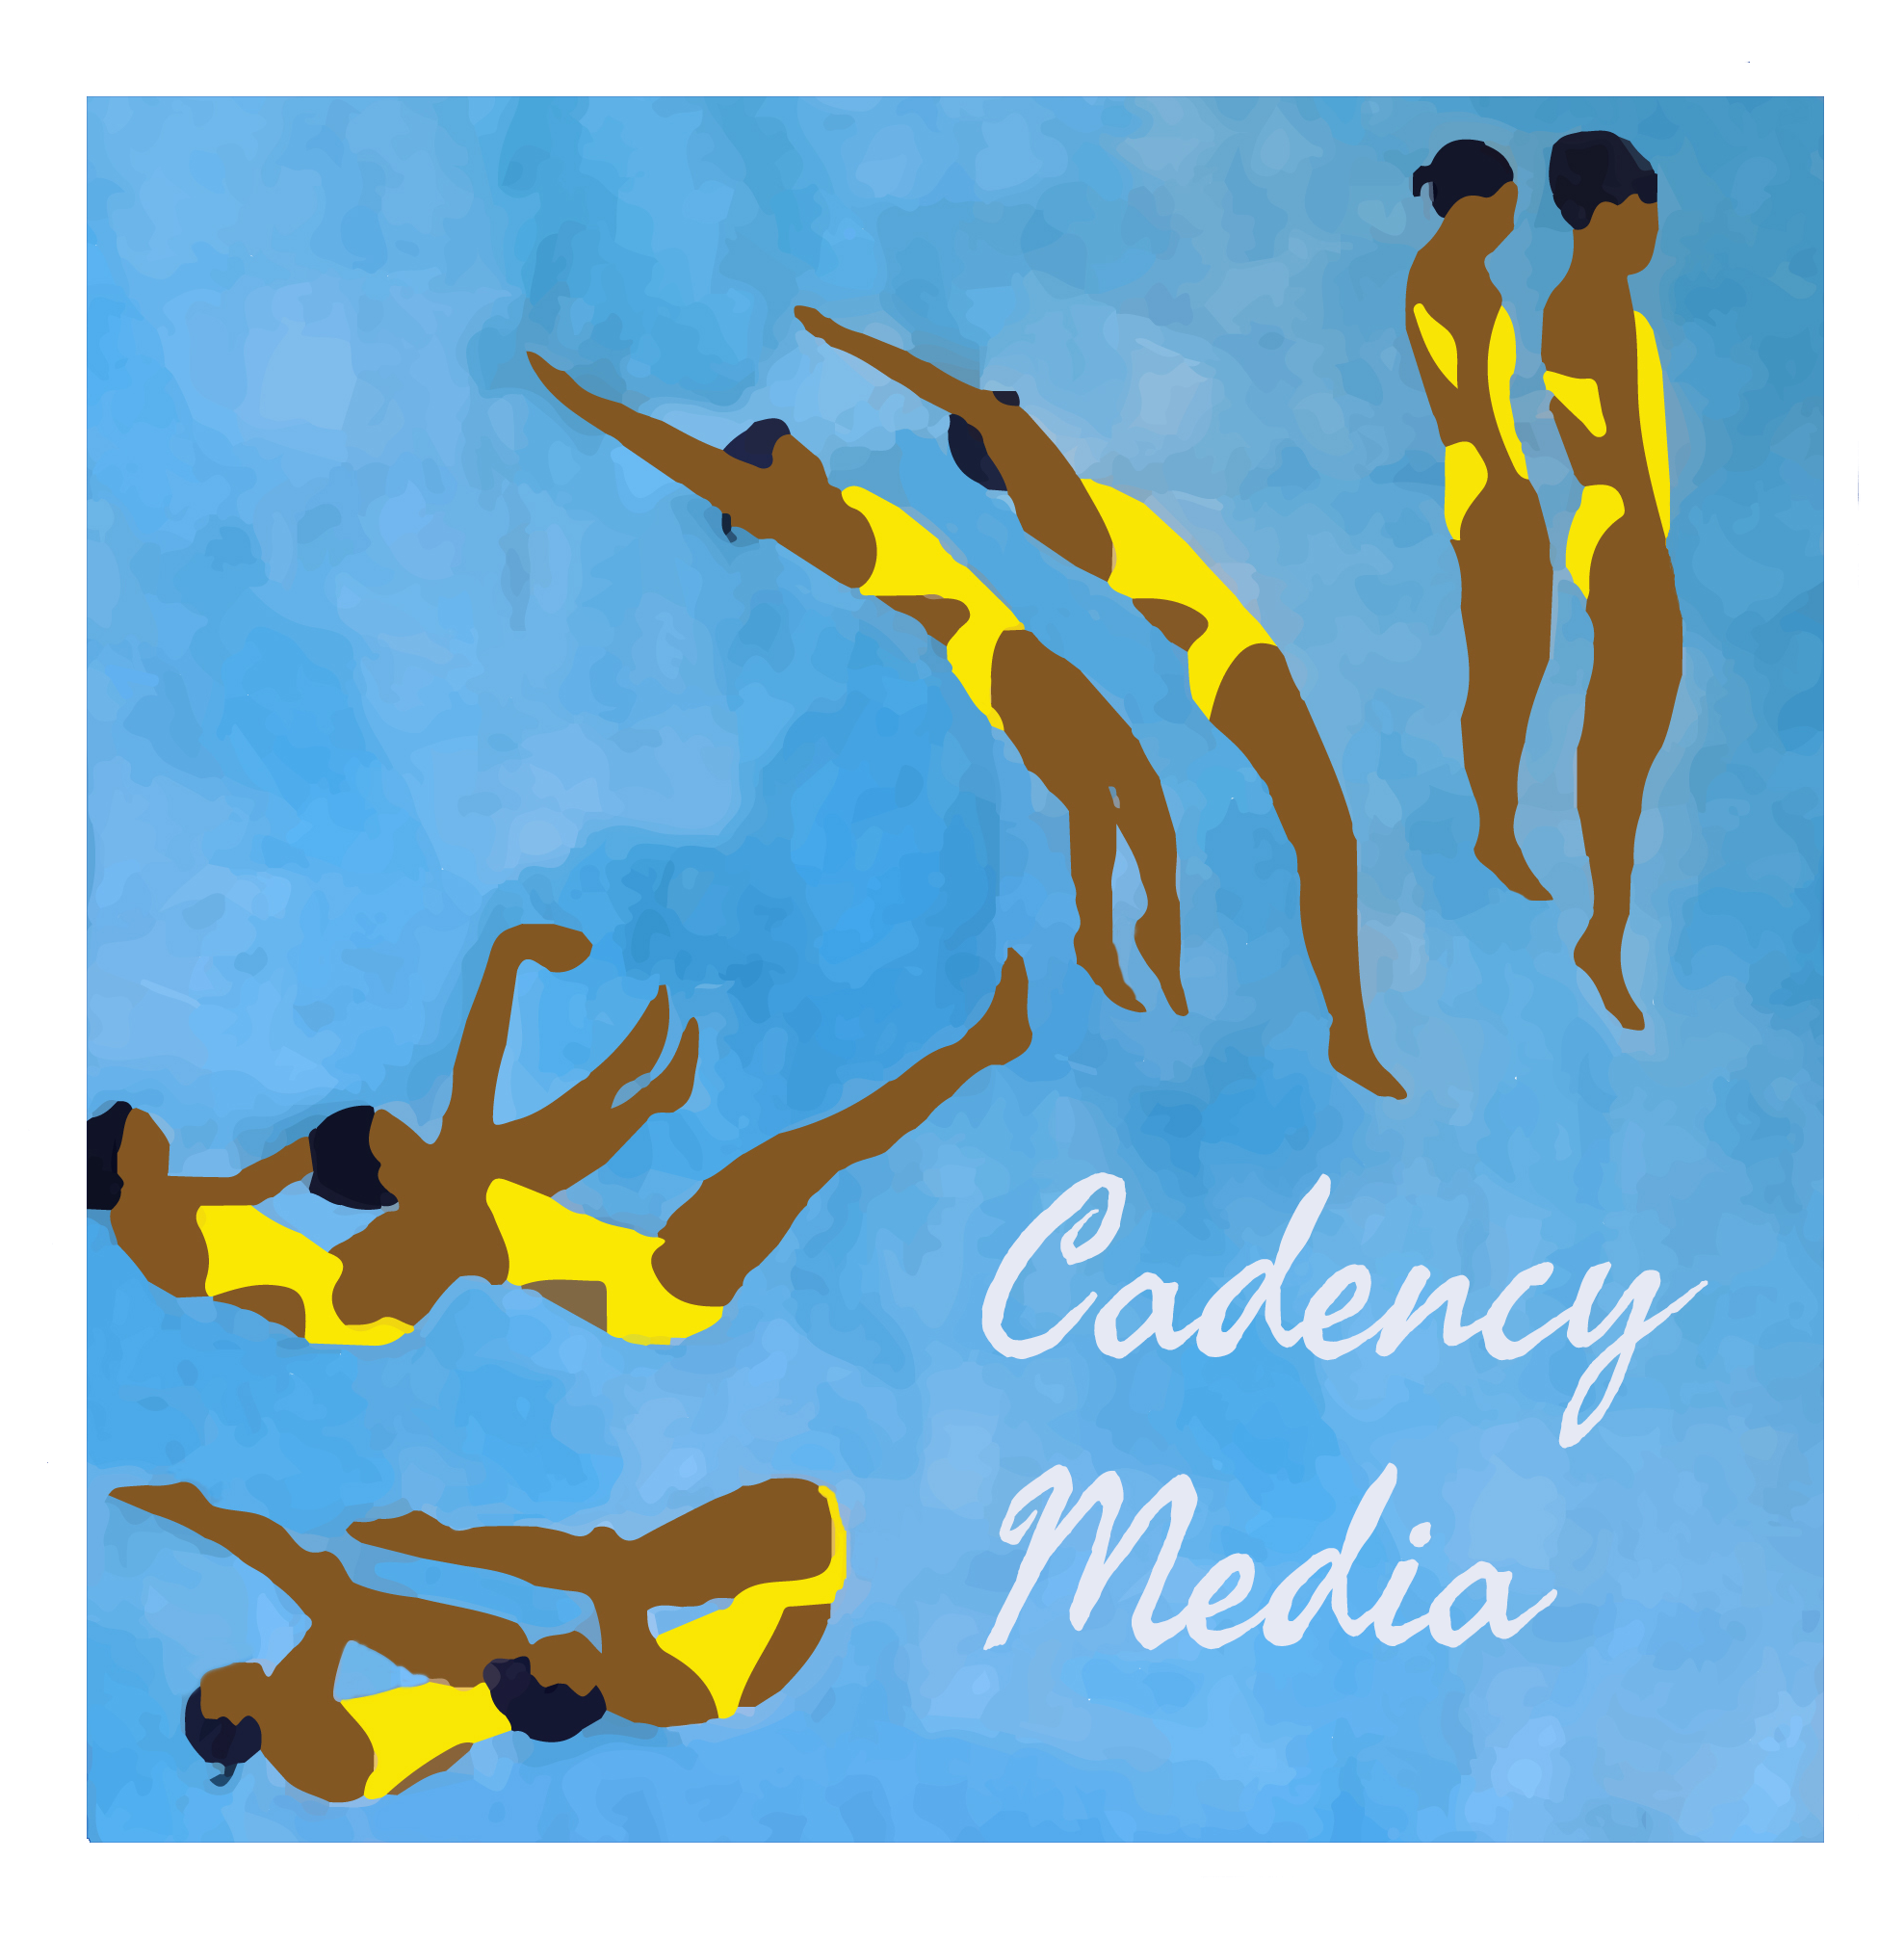 Cadency Media